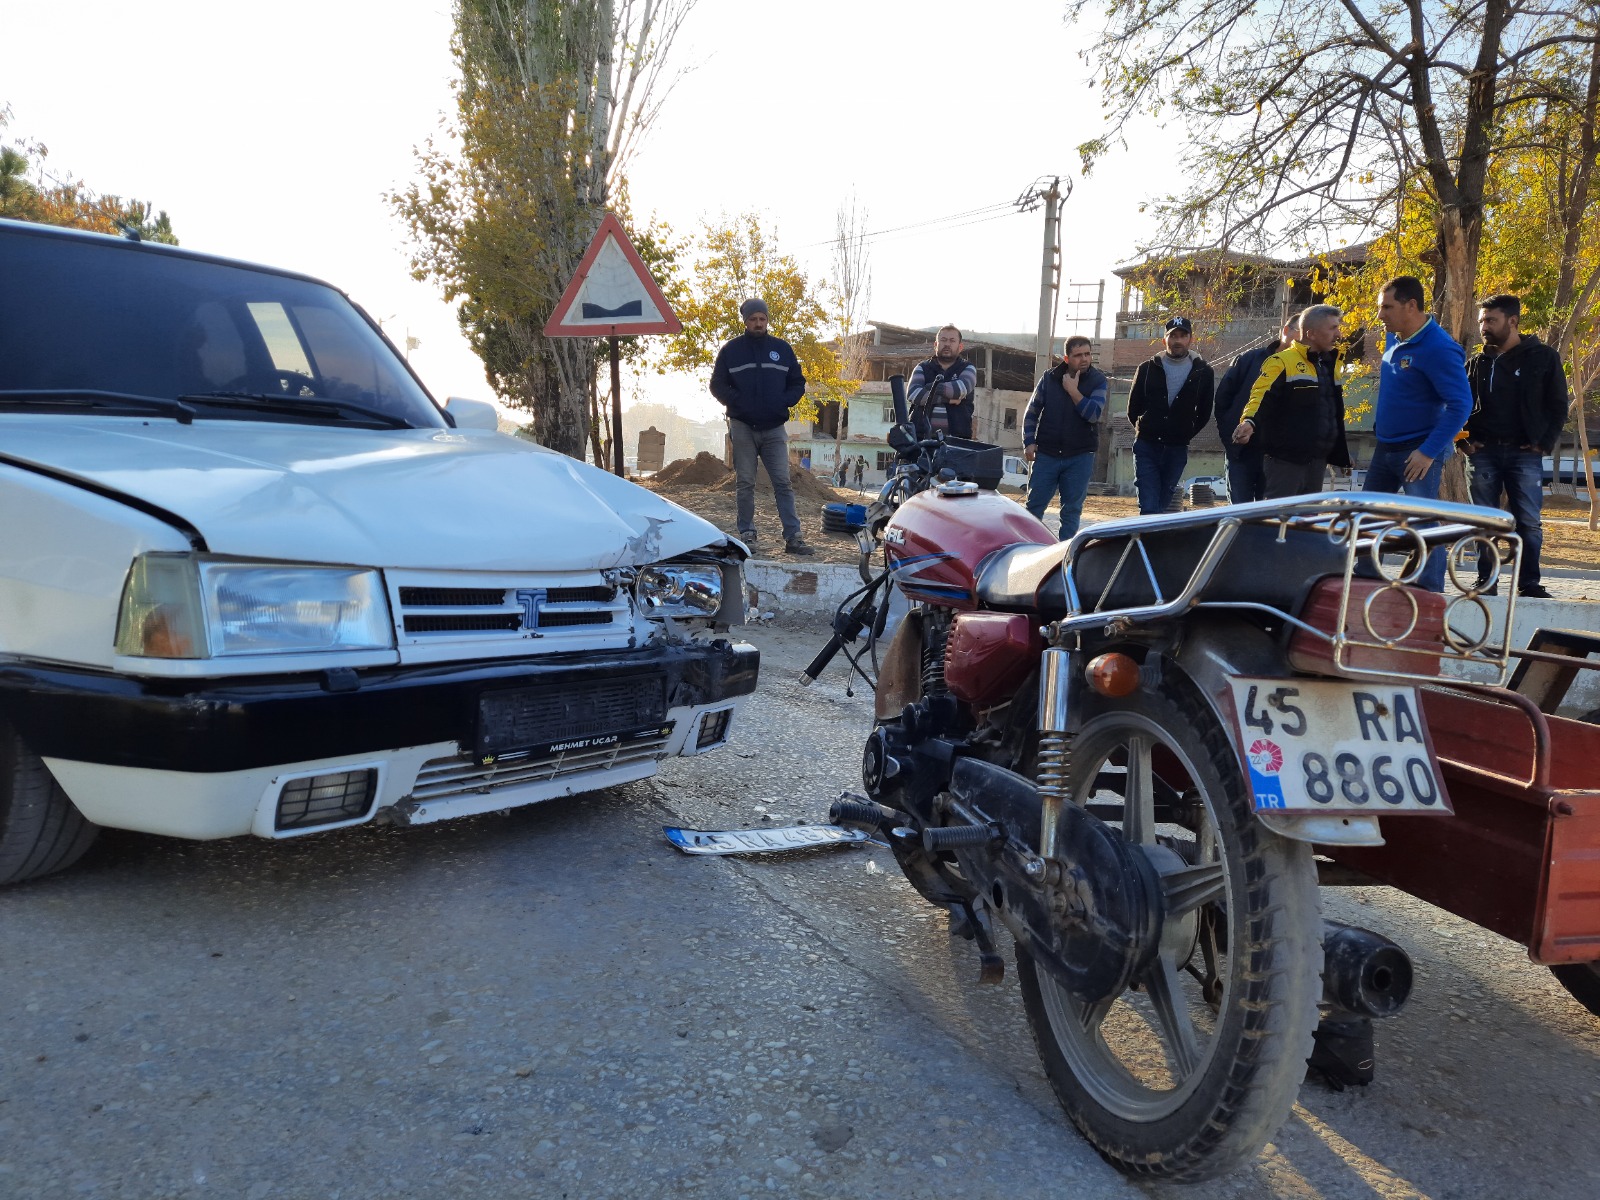 Manisa’da motosiklet kazası: 1 ağır yaralı